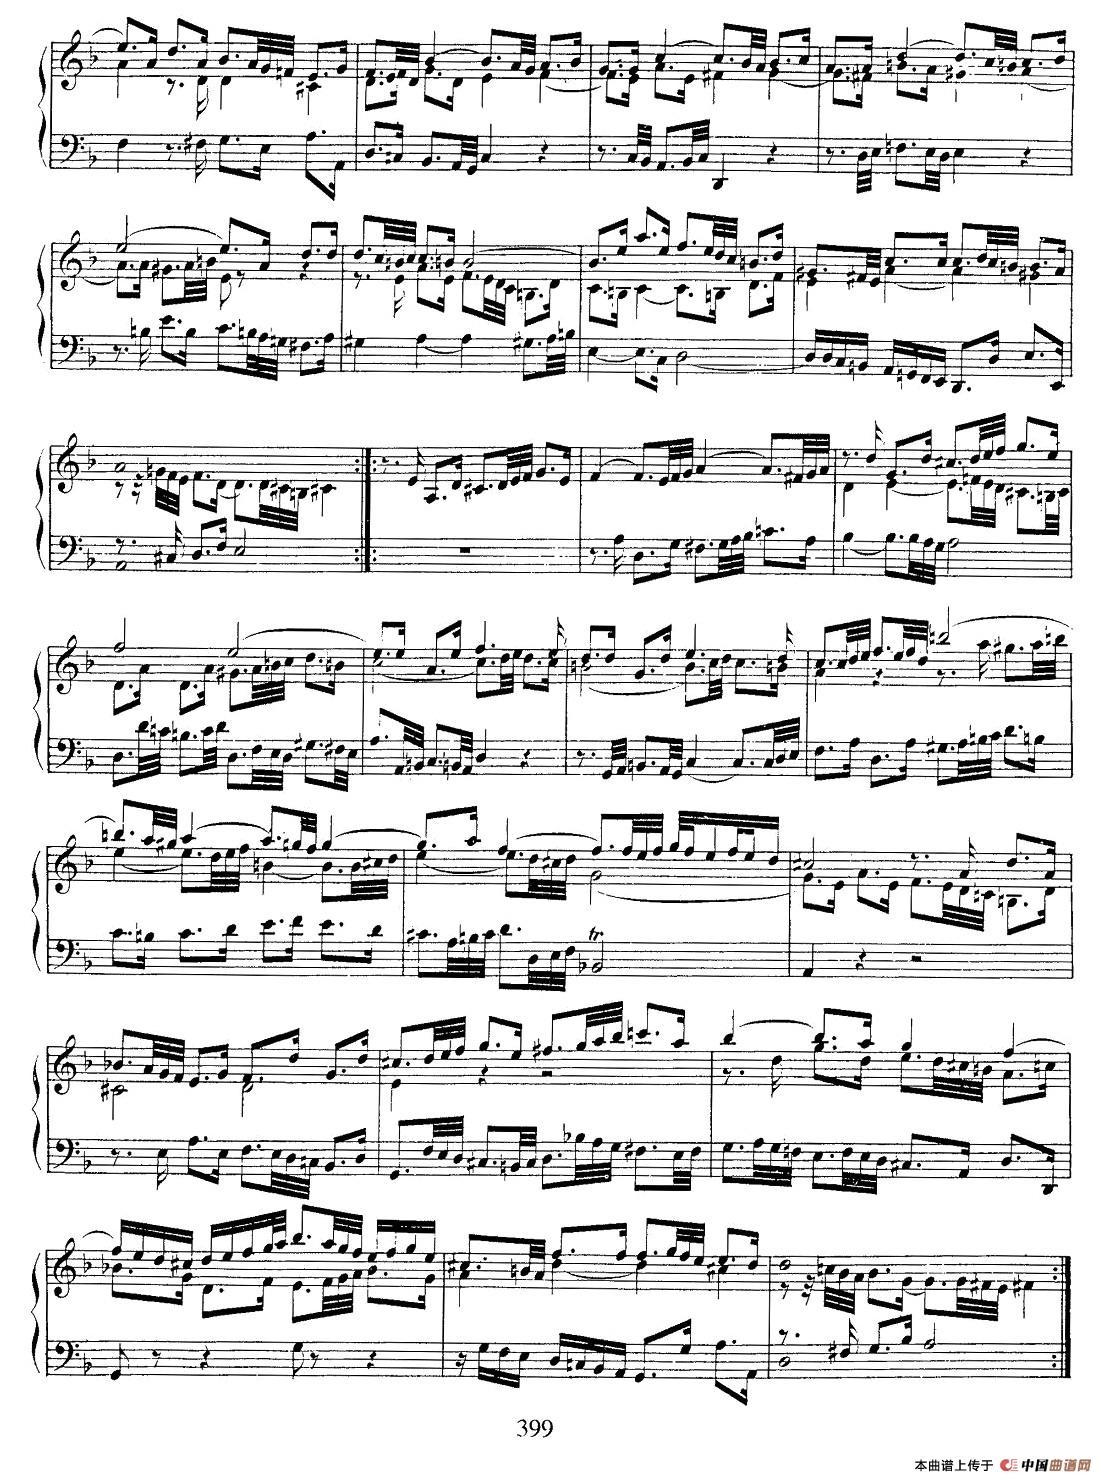 《法国组曲之一：d小调》钢琴曲谱图分享